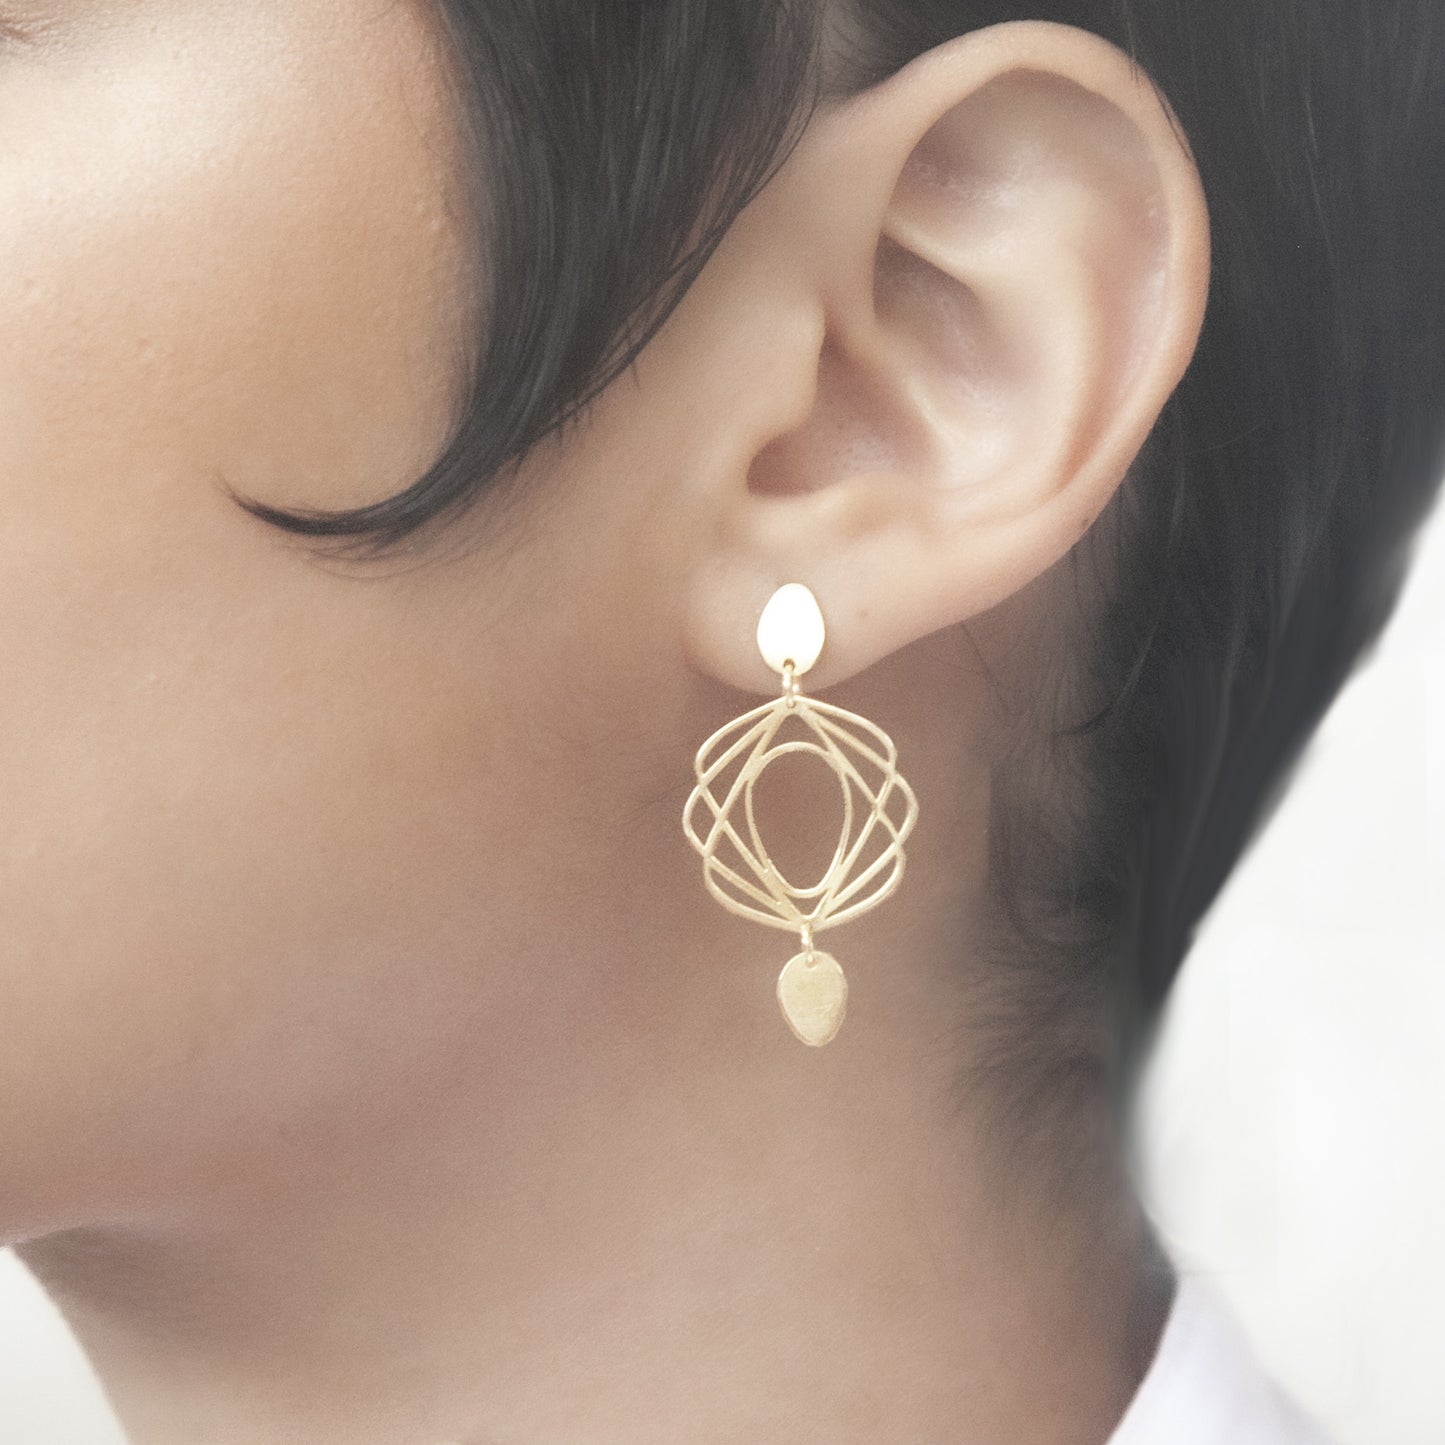 Guimard Rosace Earrings / silver 925, 18kt gold plated earrings inspirados en el movimiento ART NOUVEAU del siglo XIX como homenaje al Arquitecto de la Opera de Paris, Hector Guimard. El Art Nouveau comprende formas curvas, naturales y sensuales.